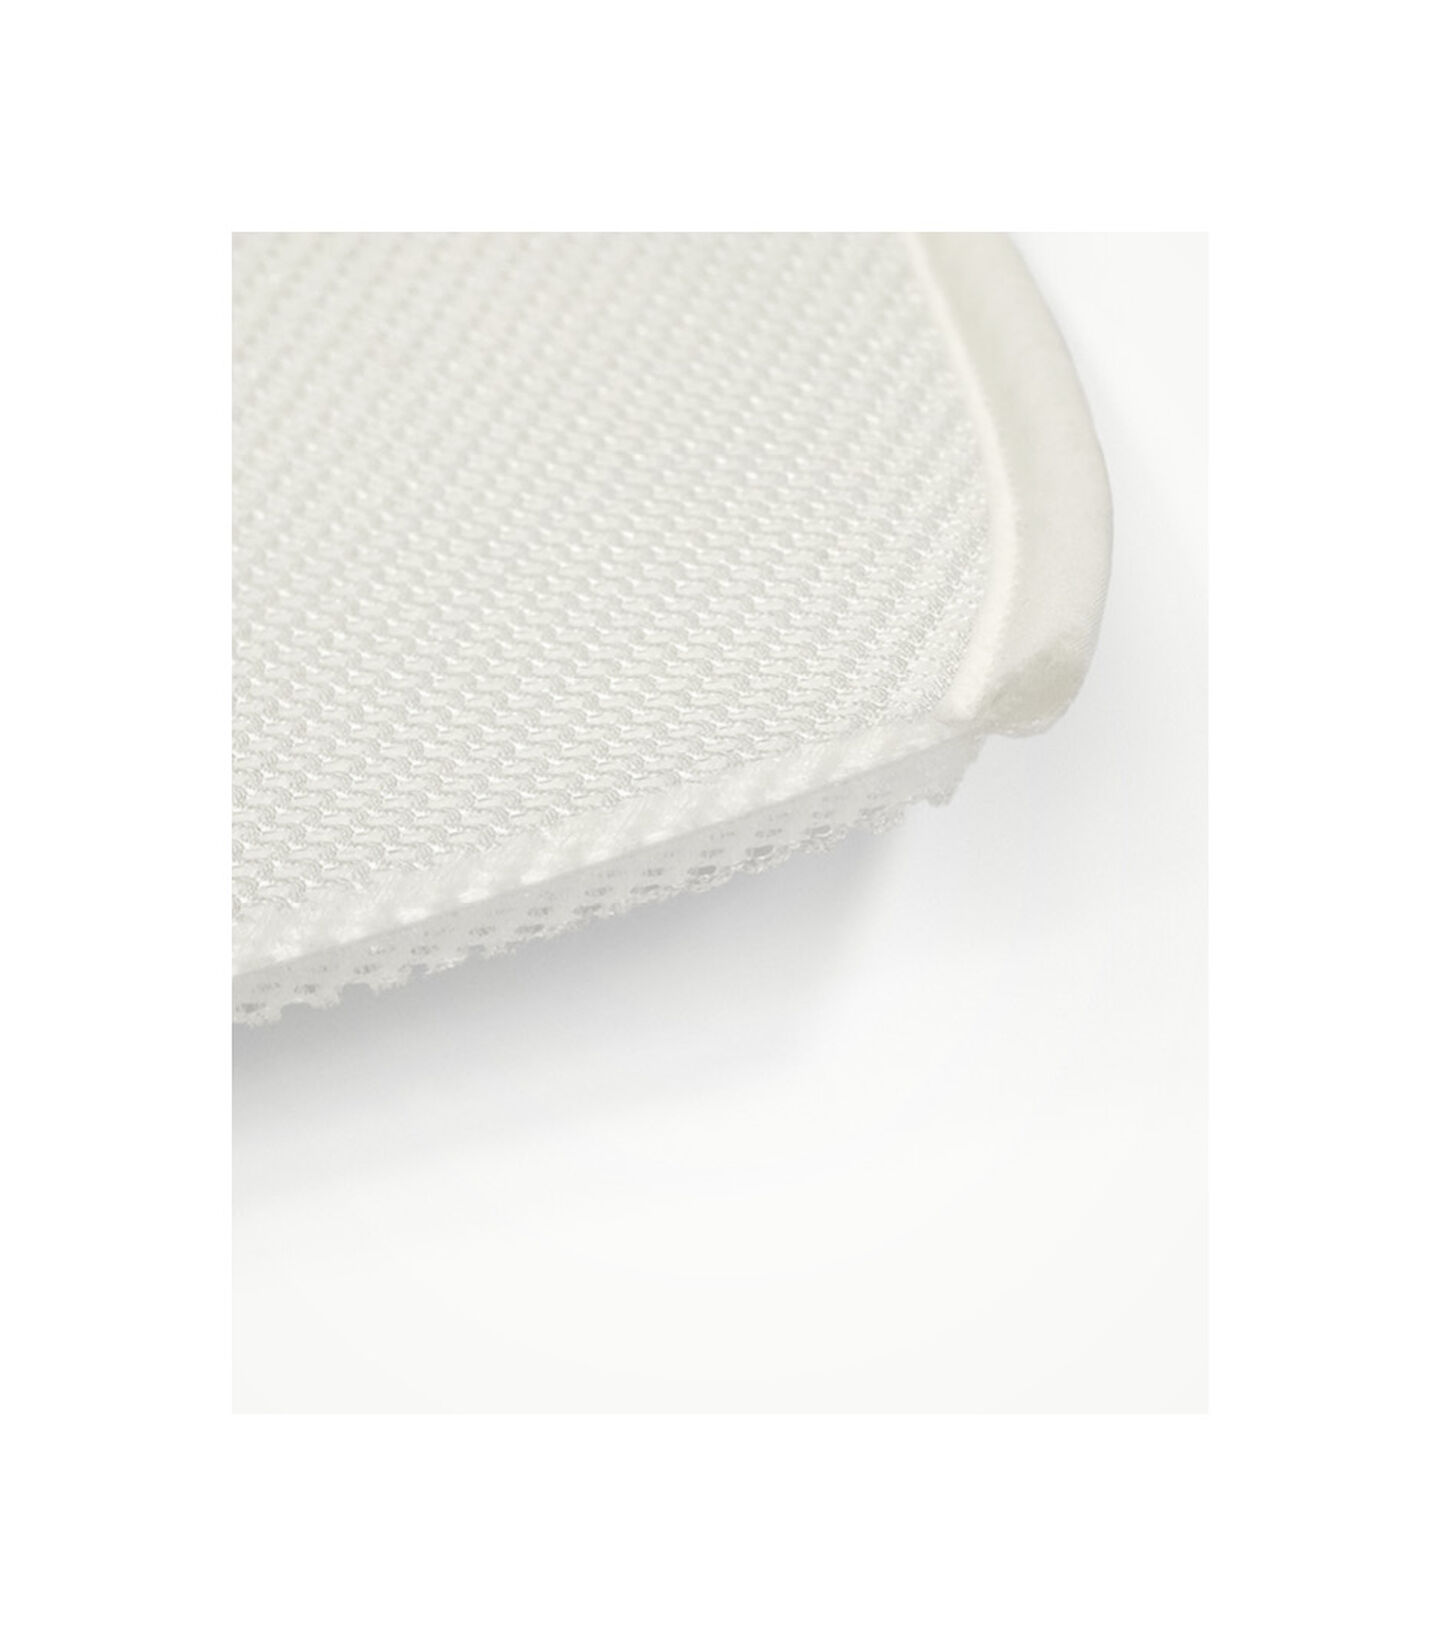 Stokke® Sleepi™ Mini Beskytteleslaken White, White, mainview view 3